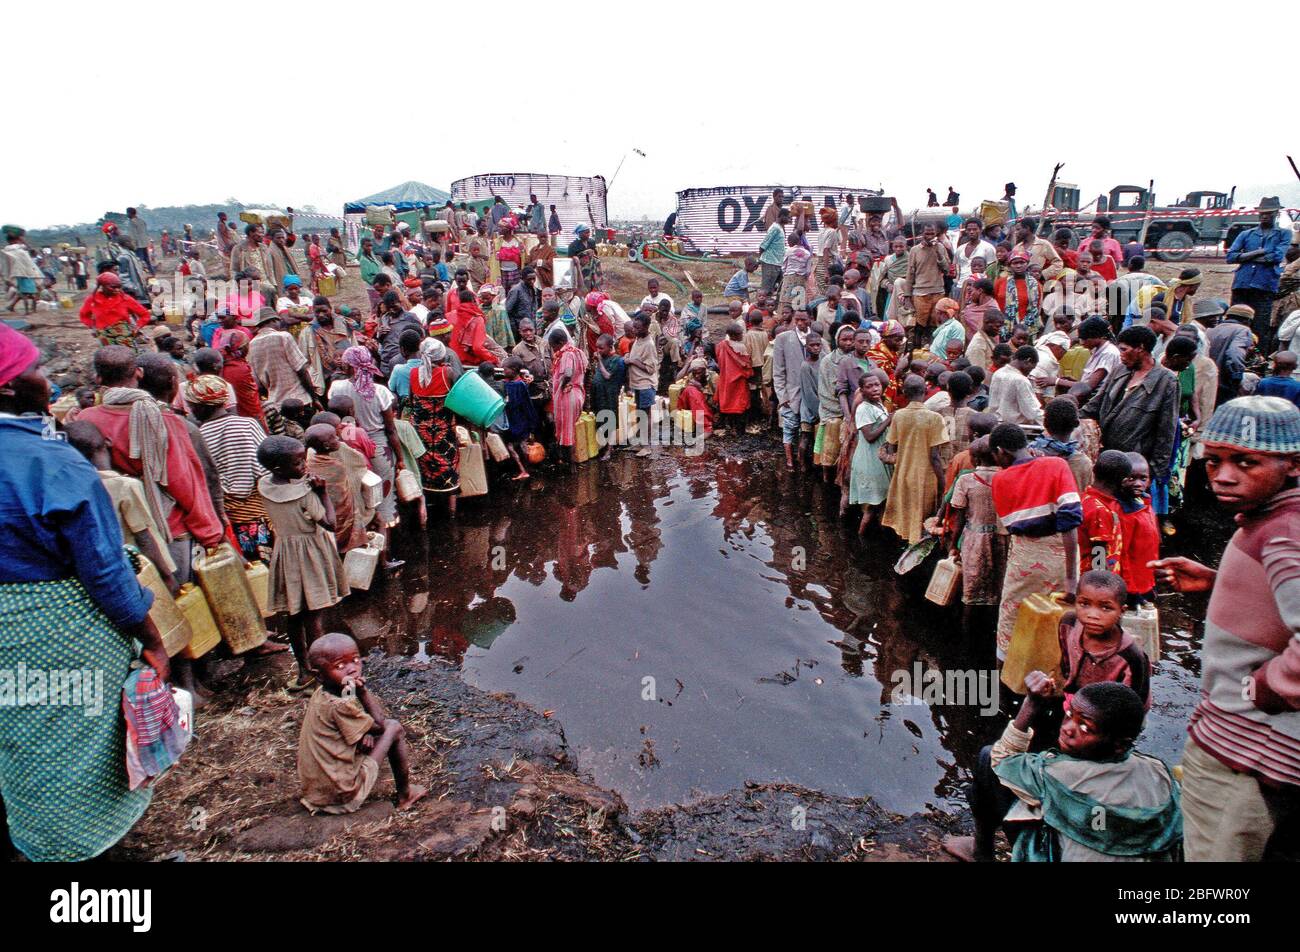 1994 Zaire- profughi dal Ruanda amaro della guerra civile tra le etnie hutu e tutsi tribù in Africa australe, raccogliere con qualcosa che possa tenere acqua, per ottenere tanto bisogno di cibo e acqua, fornito da militari Usa i soccorsi. Foto Stock